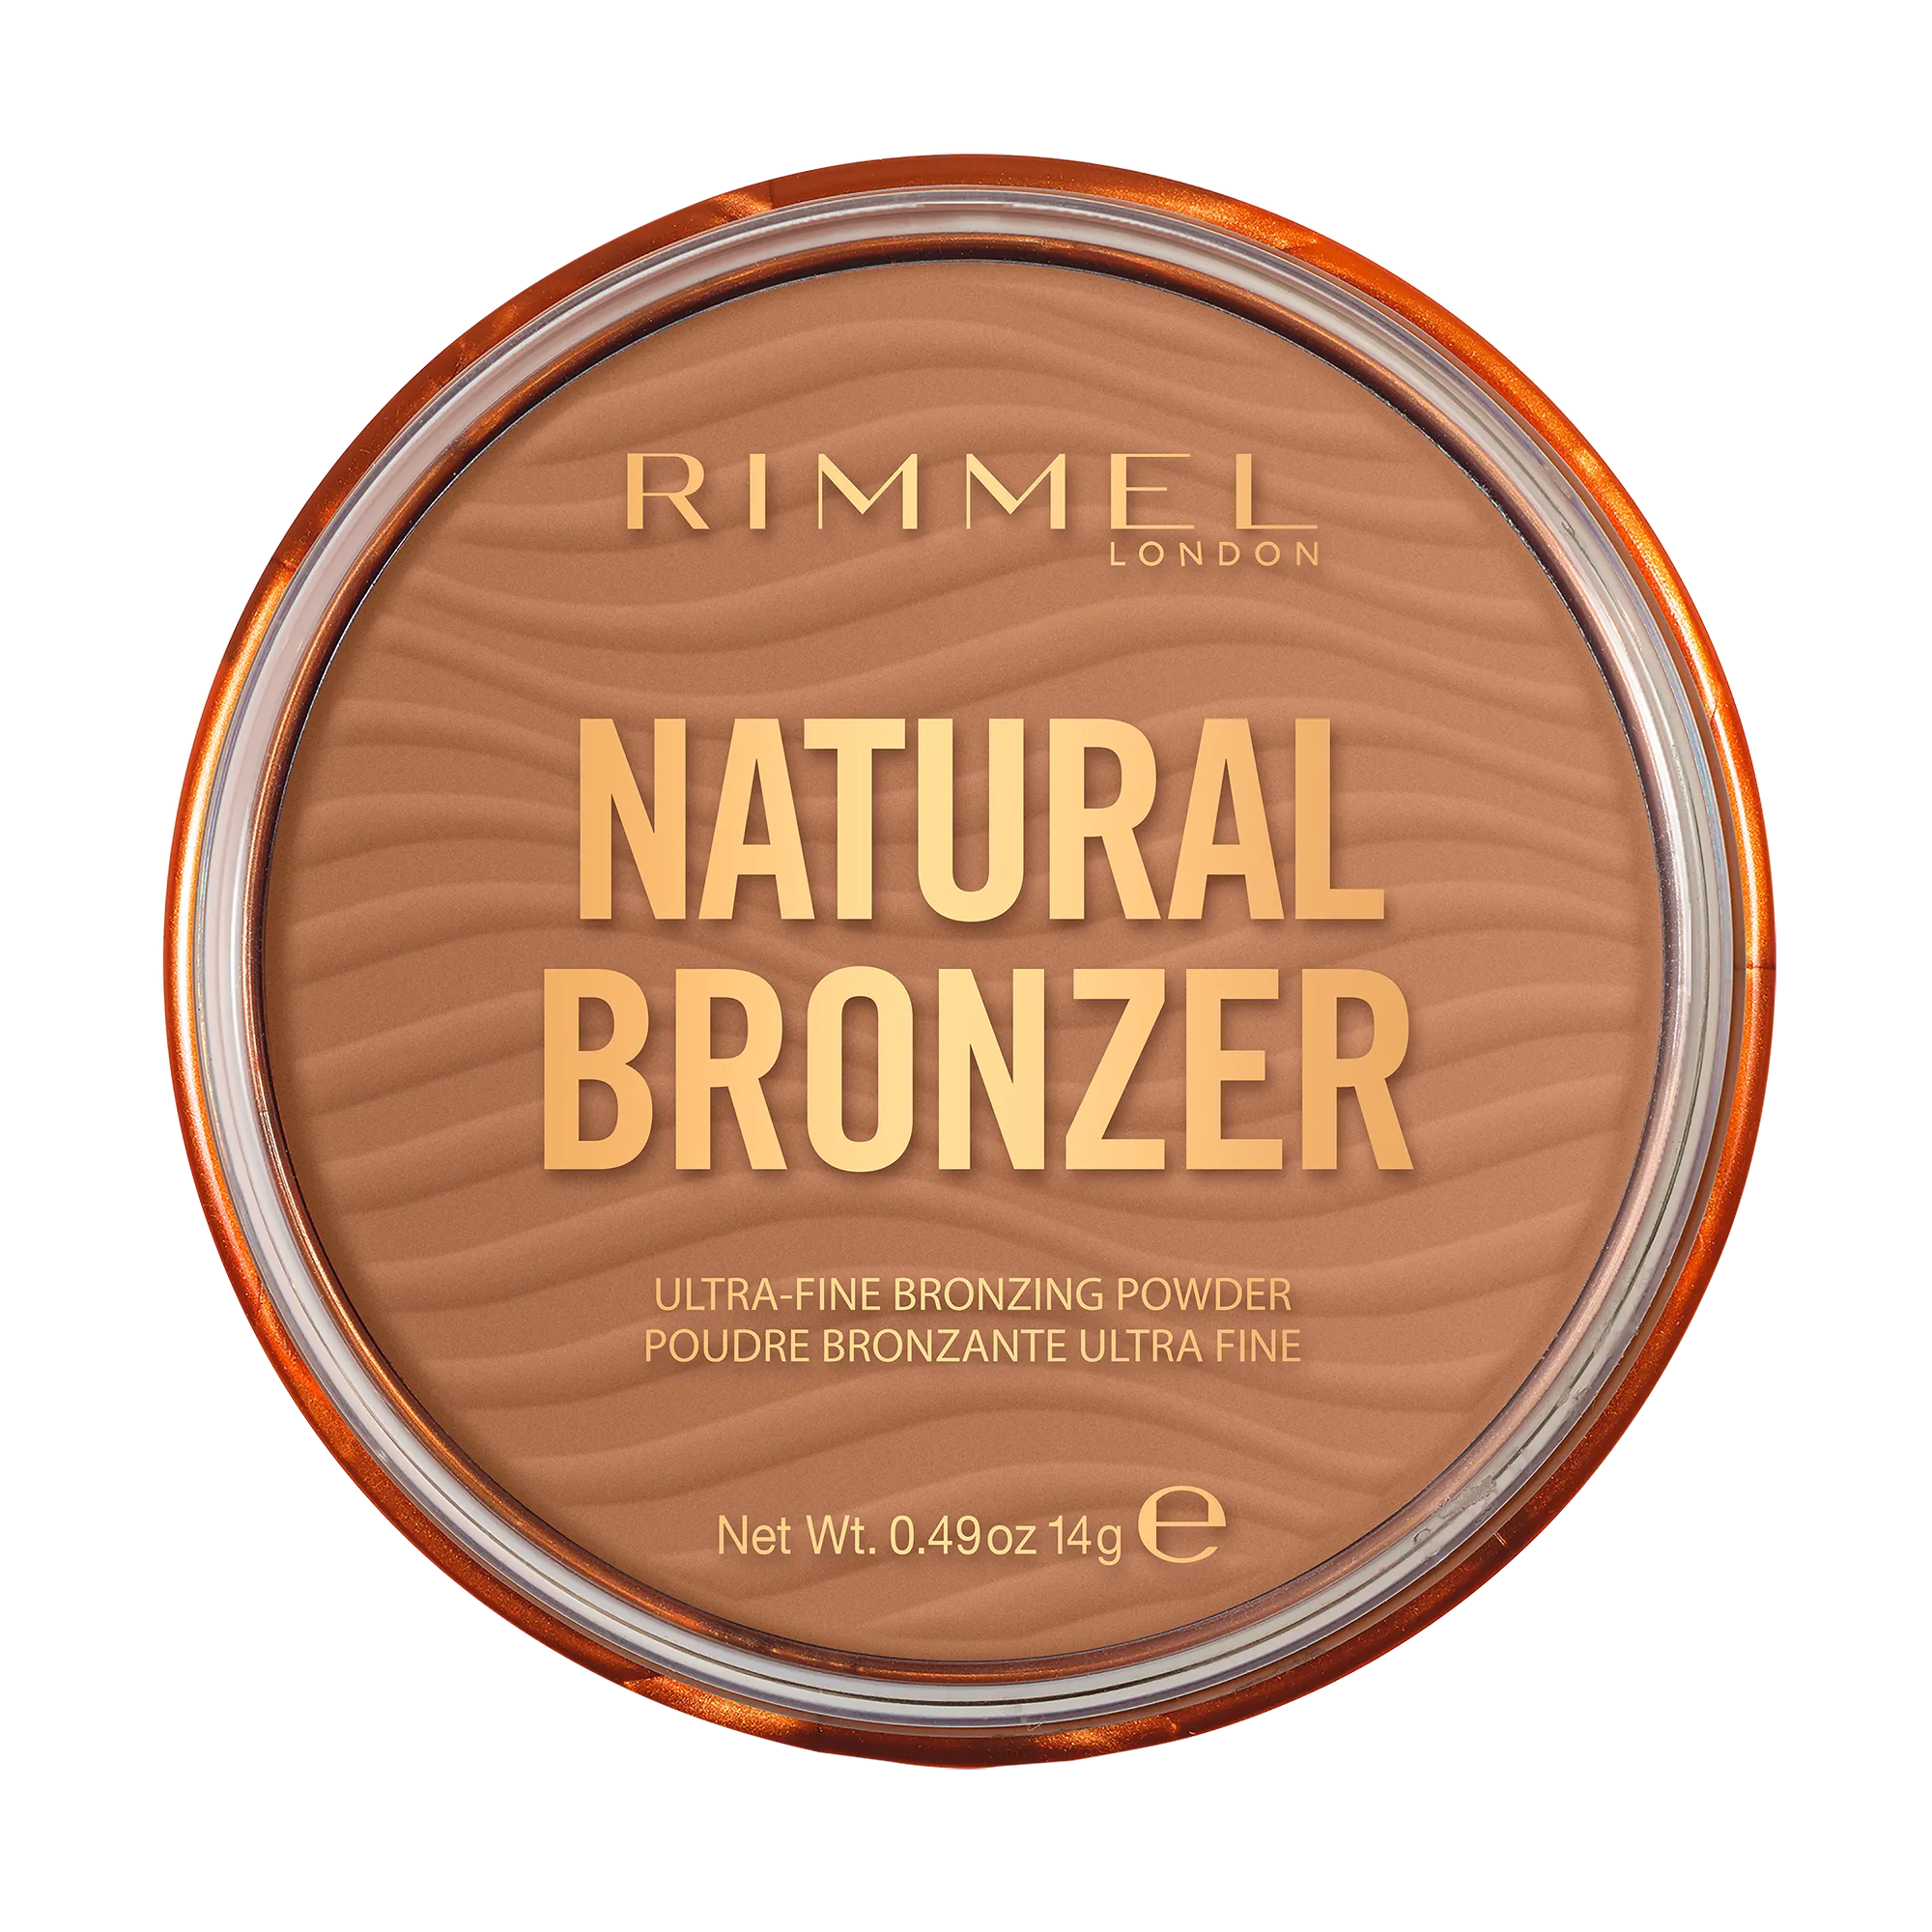 Rimmel Natural Bronzer 002 Sunbronze, 14 g